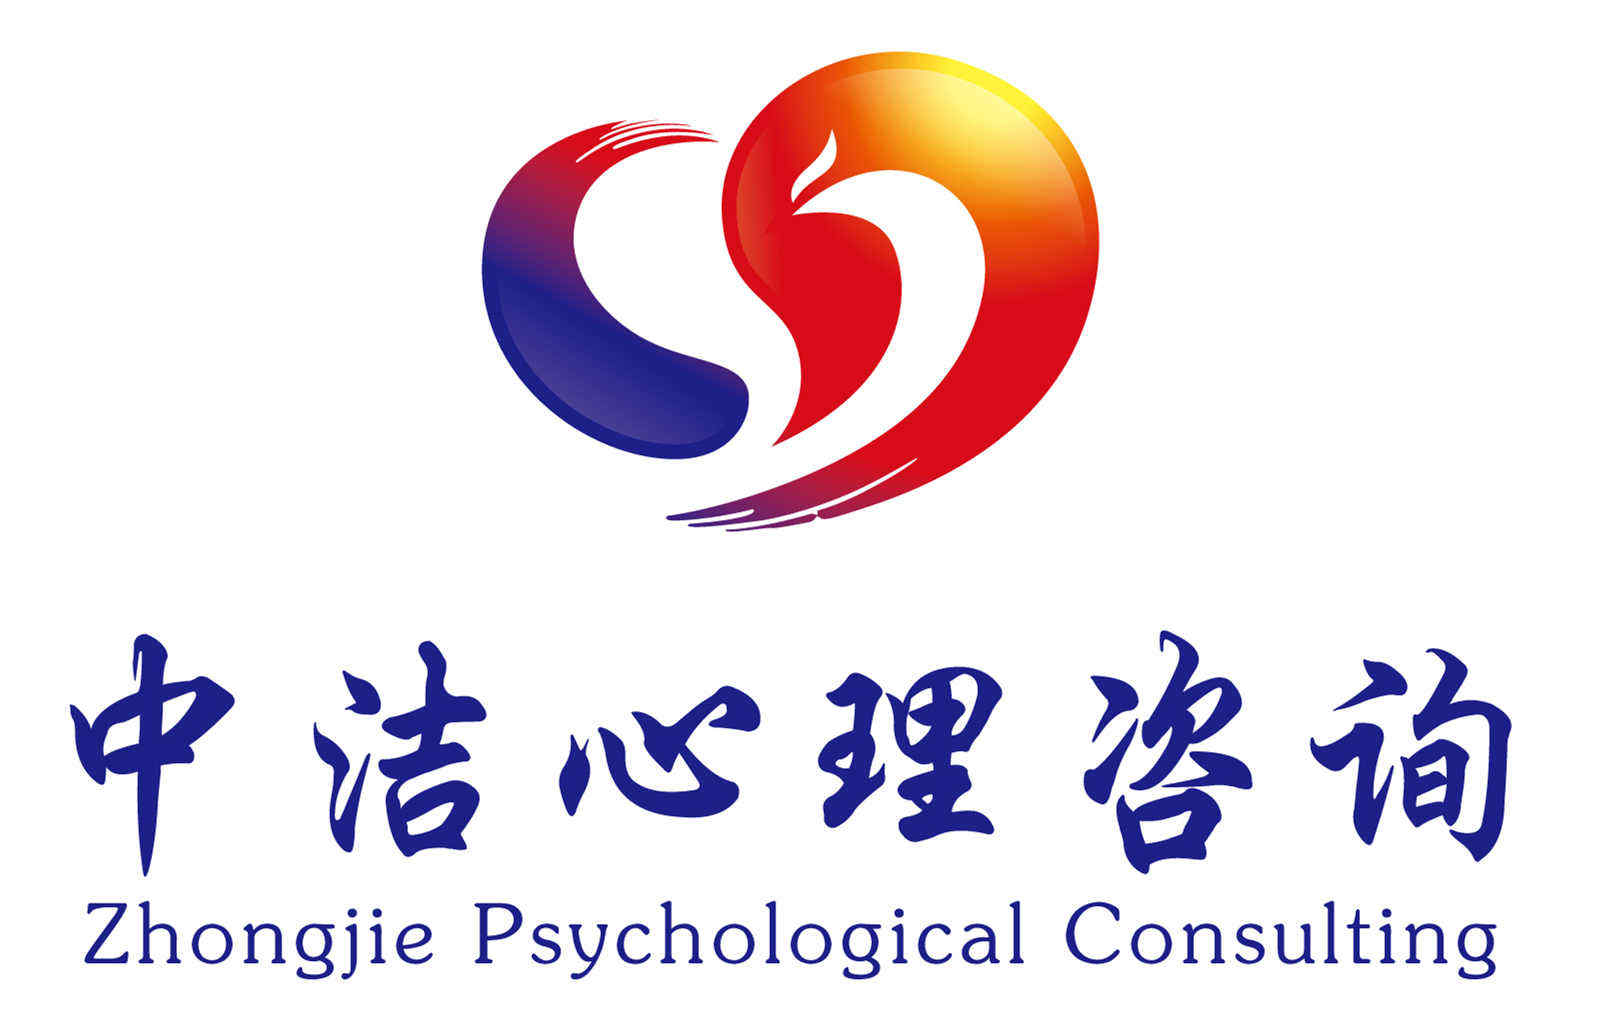 心理工作室logo设计图片